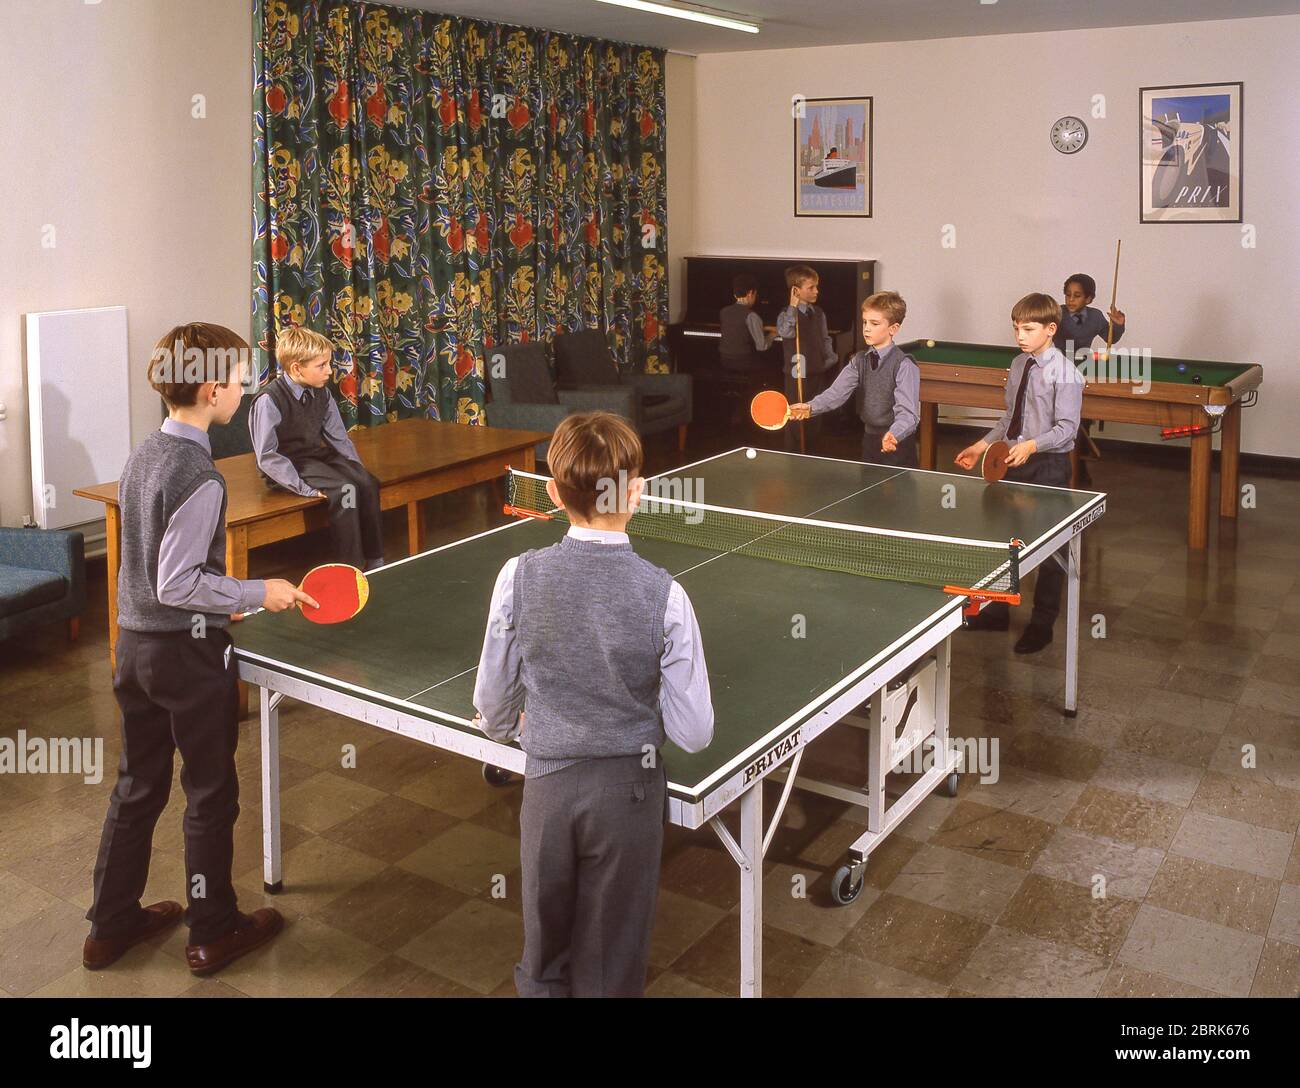 Garçons jouant au tennis de table à l'école préparatoire d'embarquement, Surrey, Angleterre, Royaume-Uni Banque D'Images